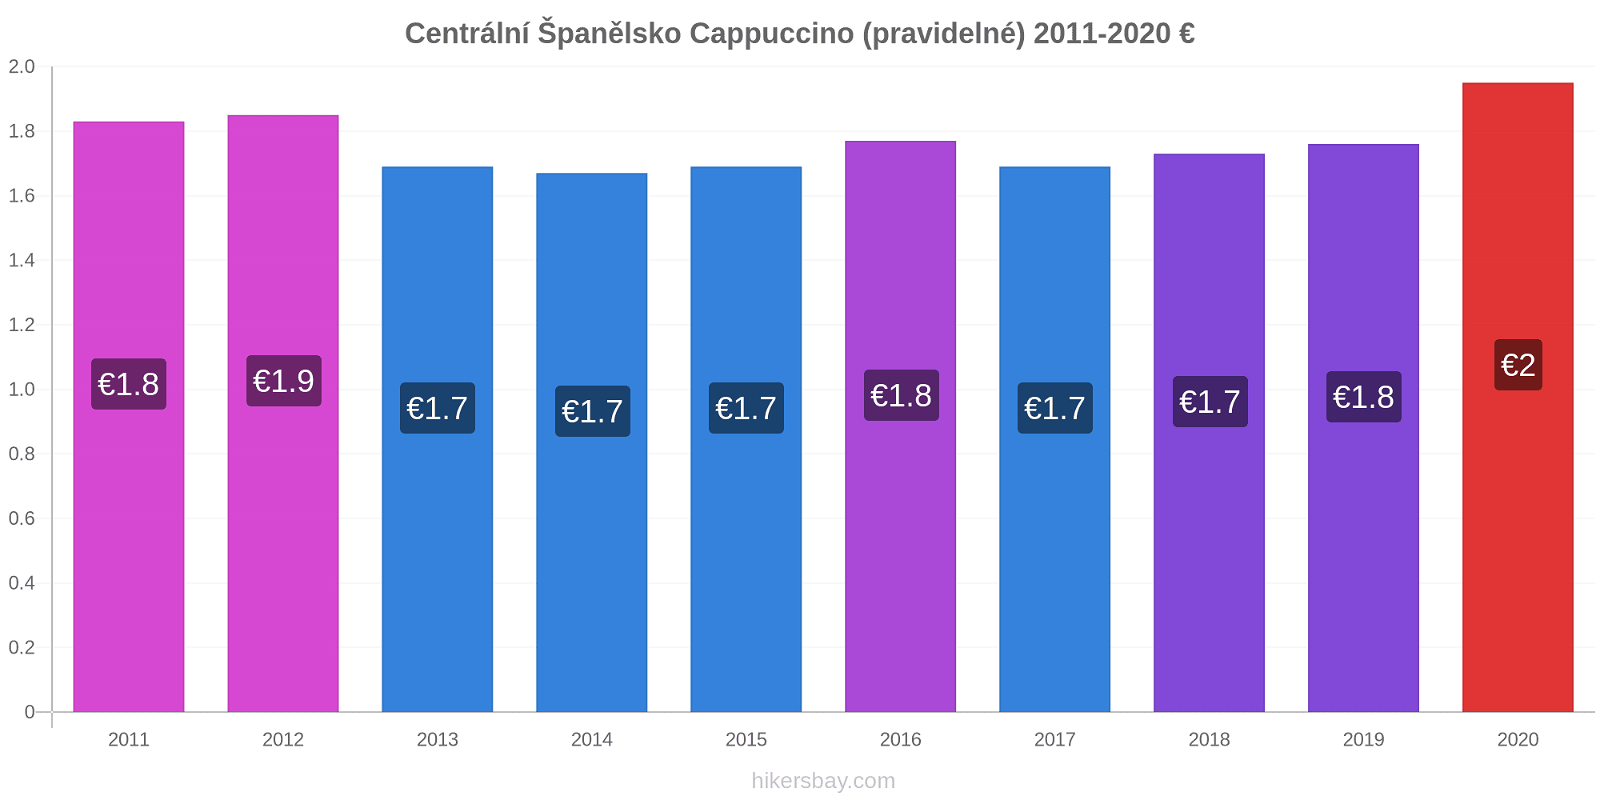 Centrální Španělsko změny cen Cappuccino (pravidelné) hikersbay.com